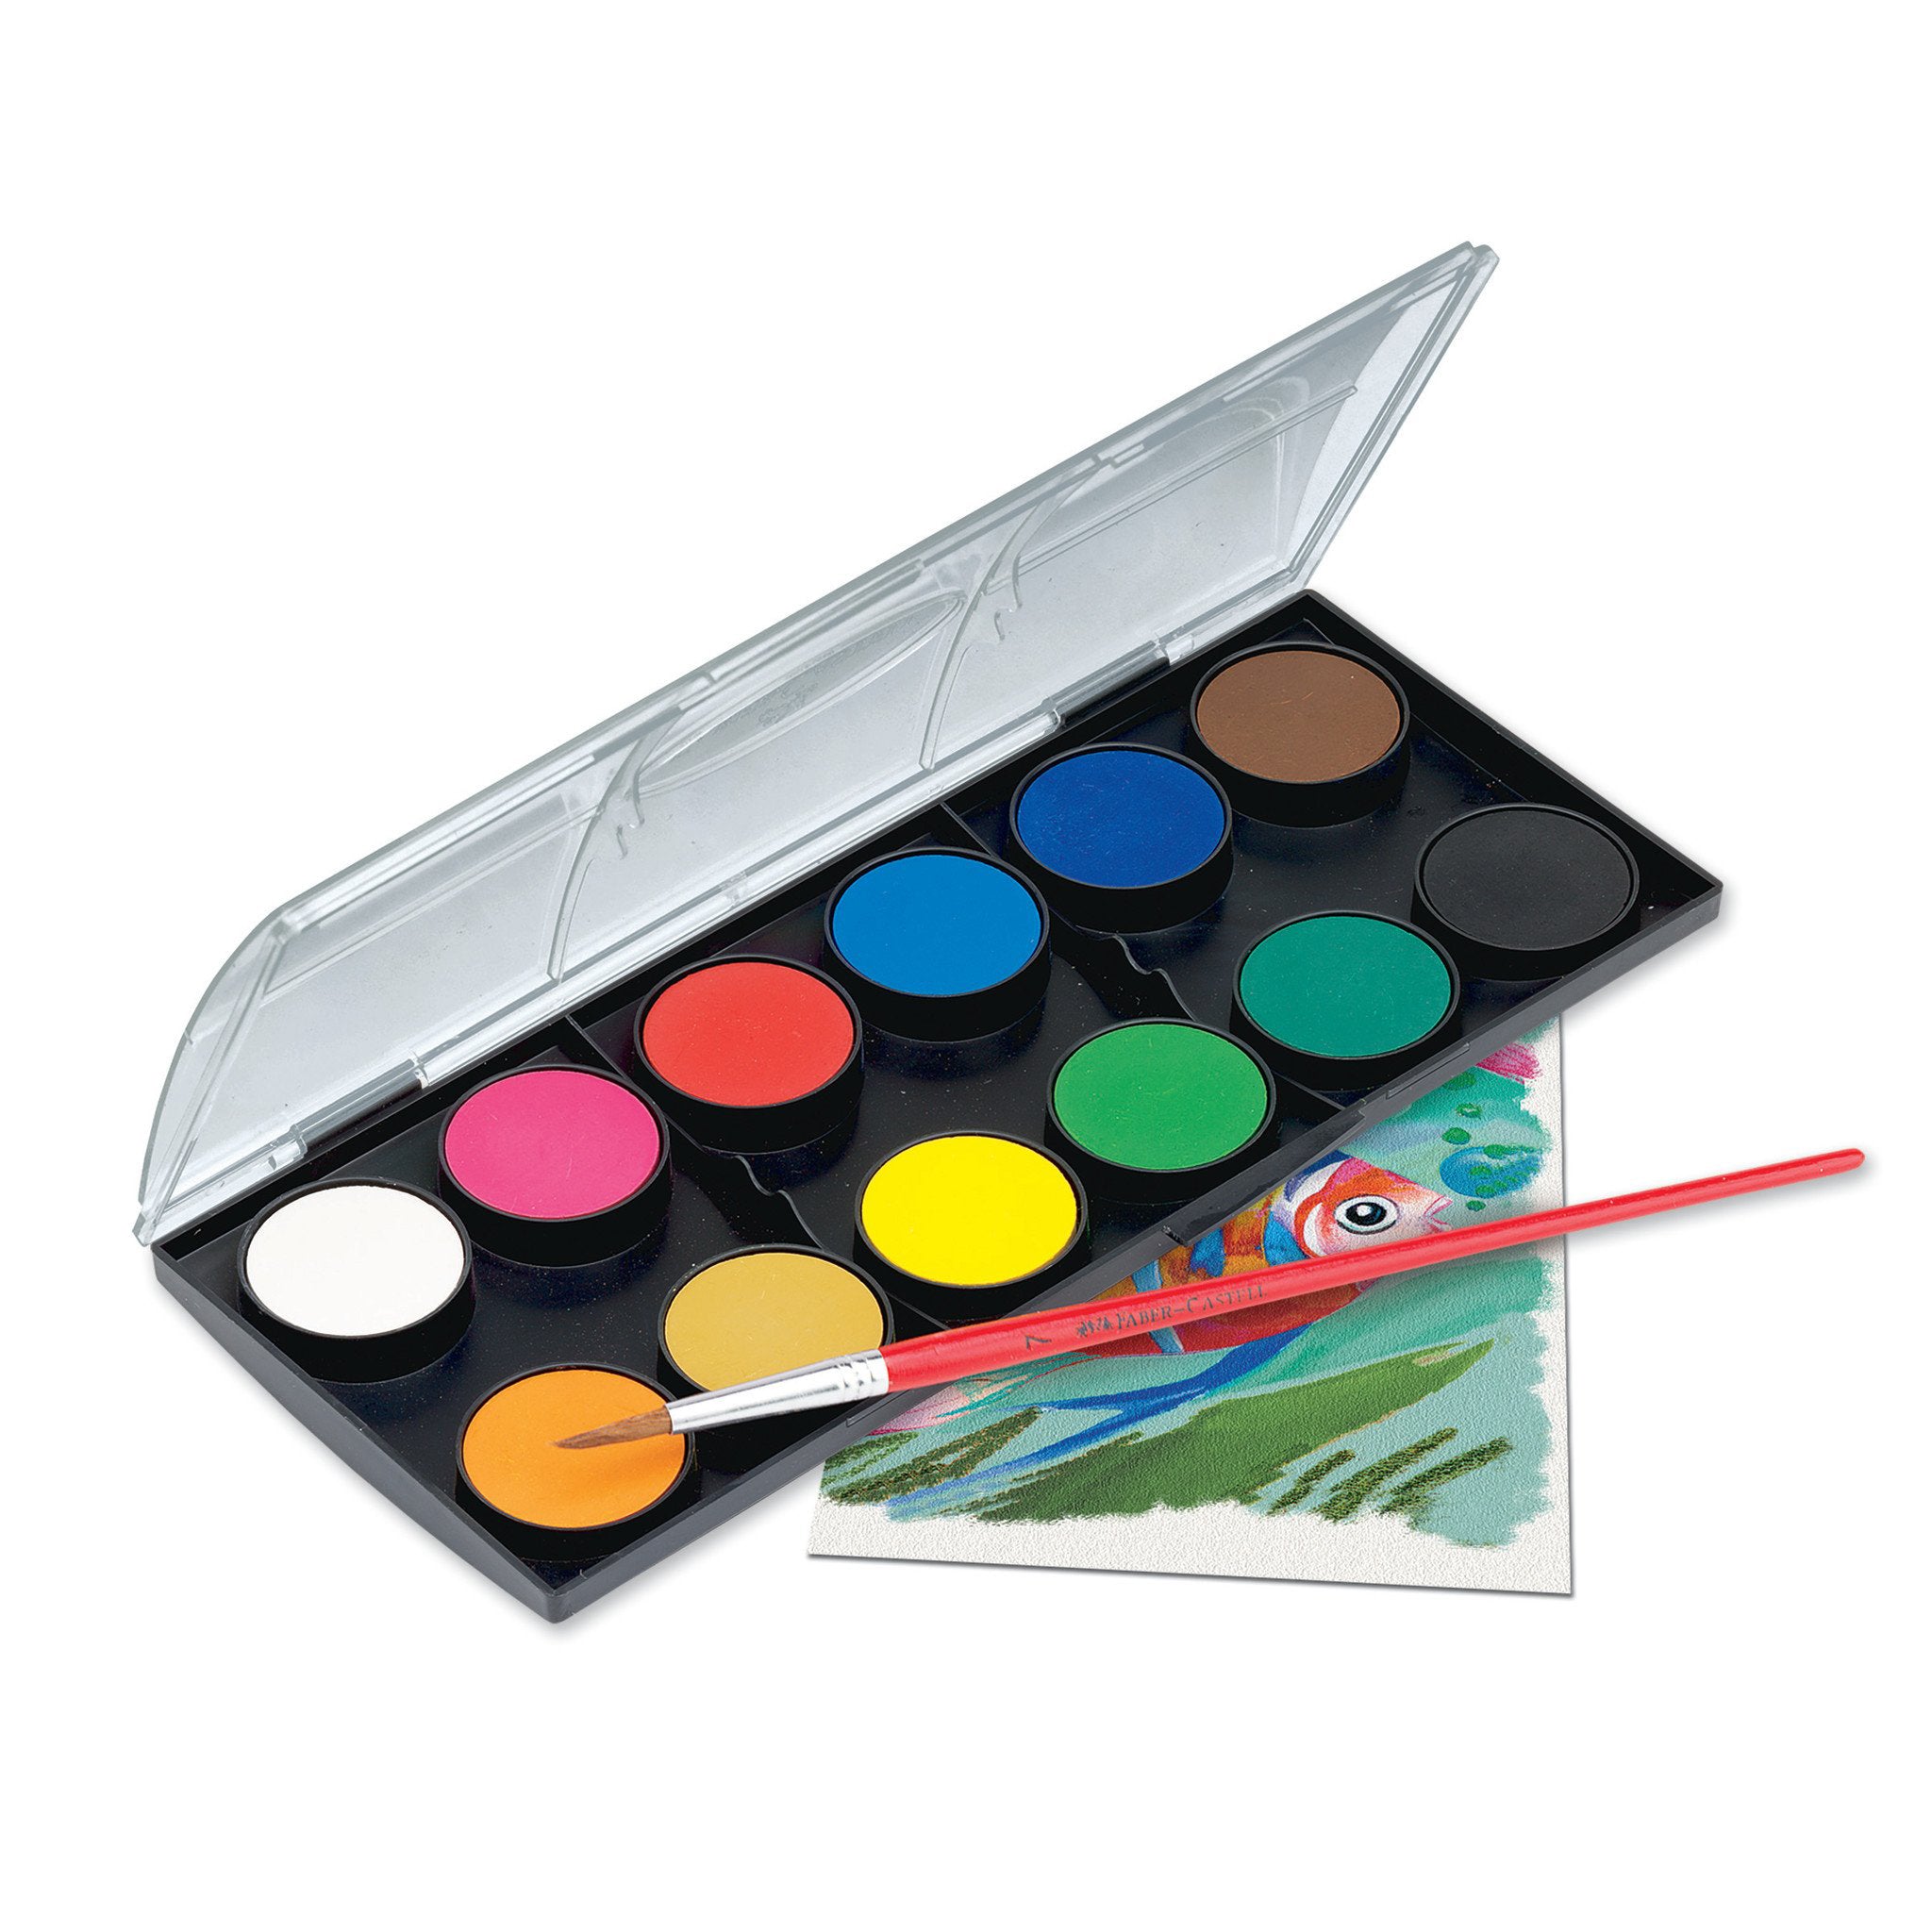 Watercolor Marker & Brush Set (9 ct)